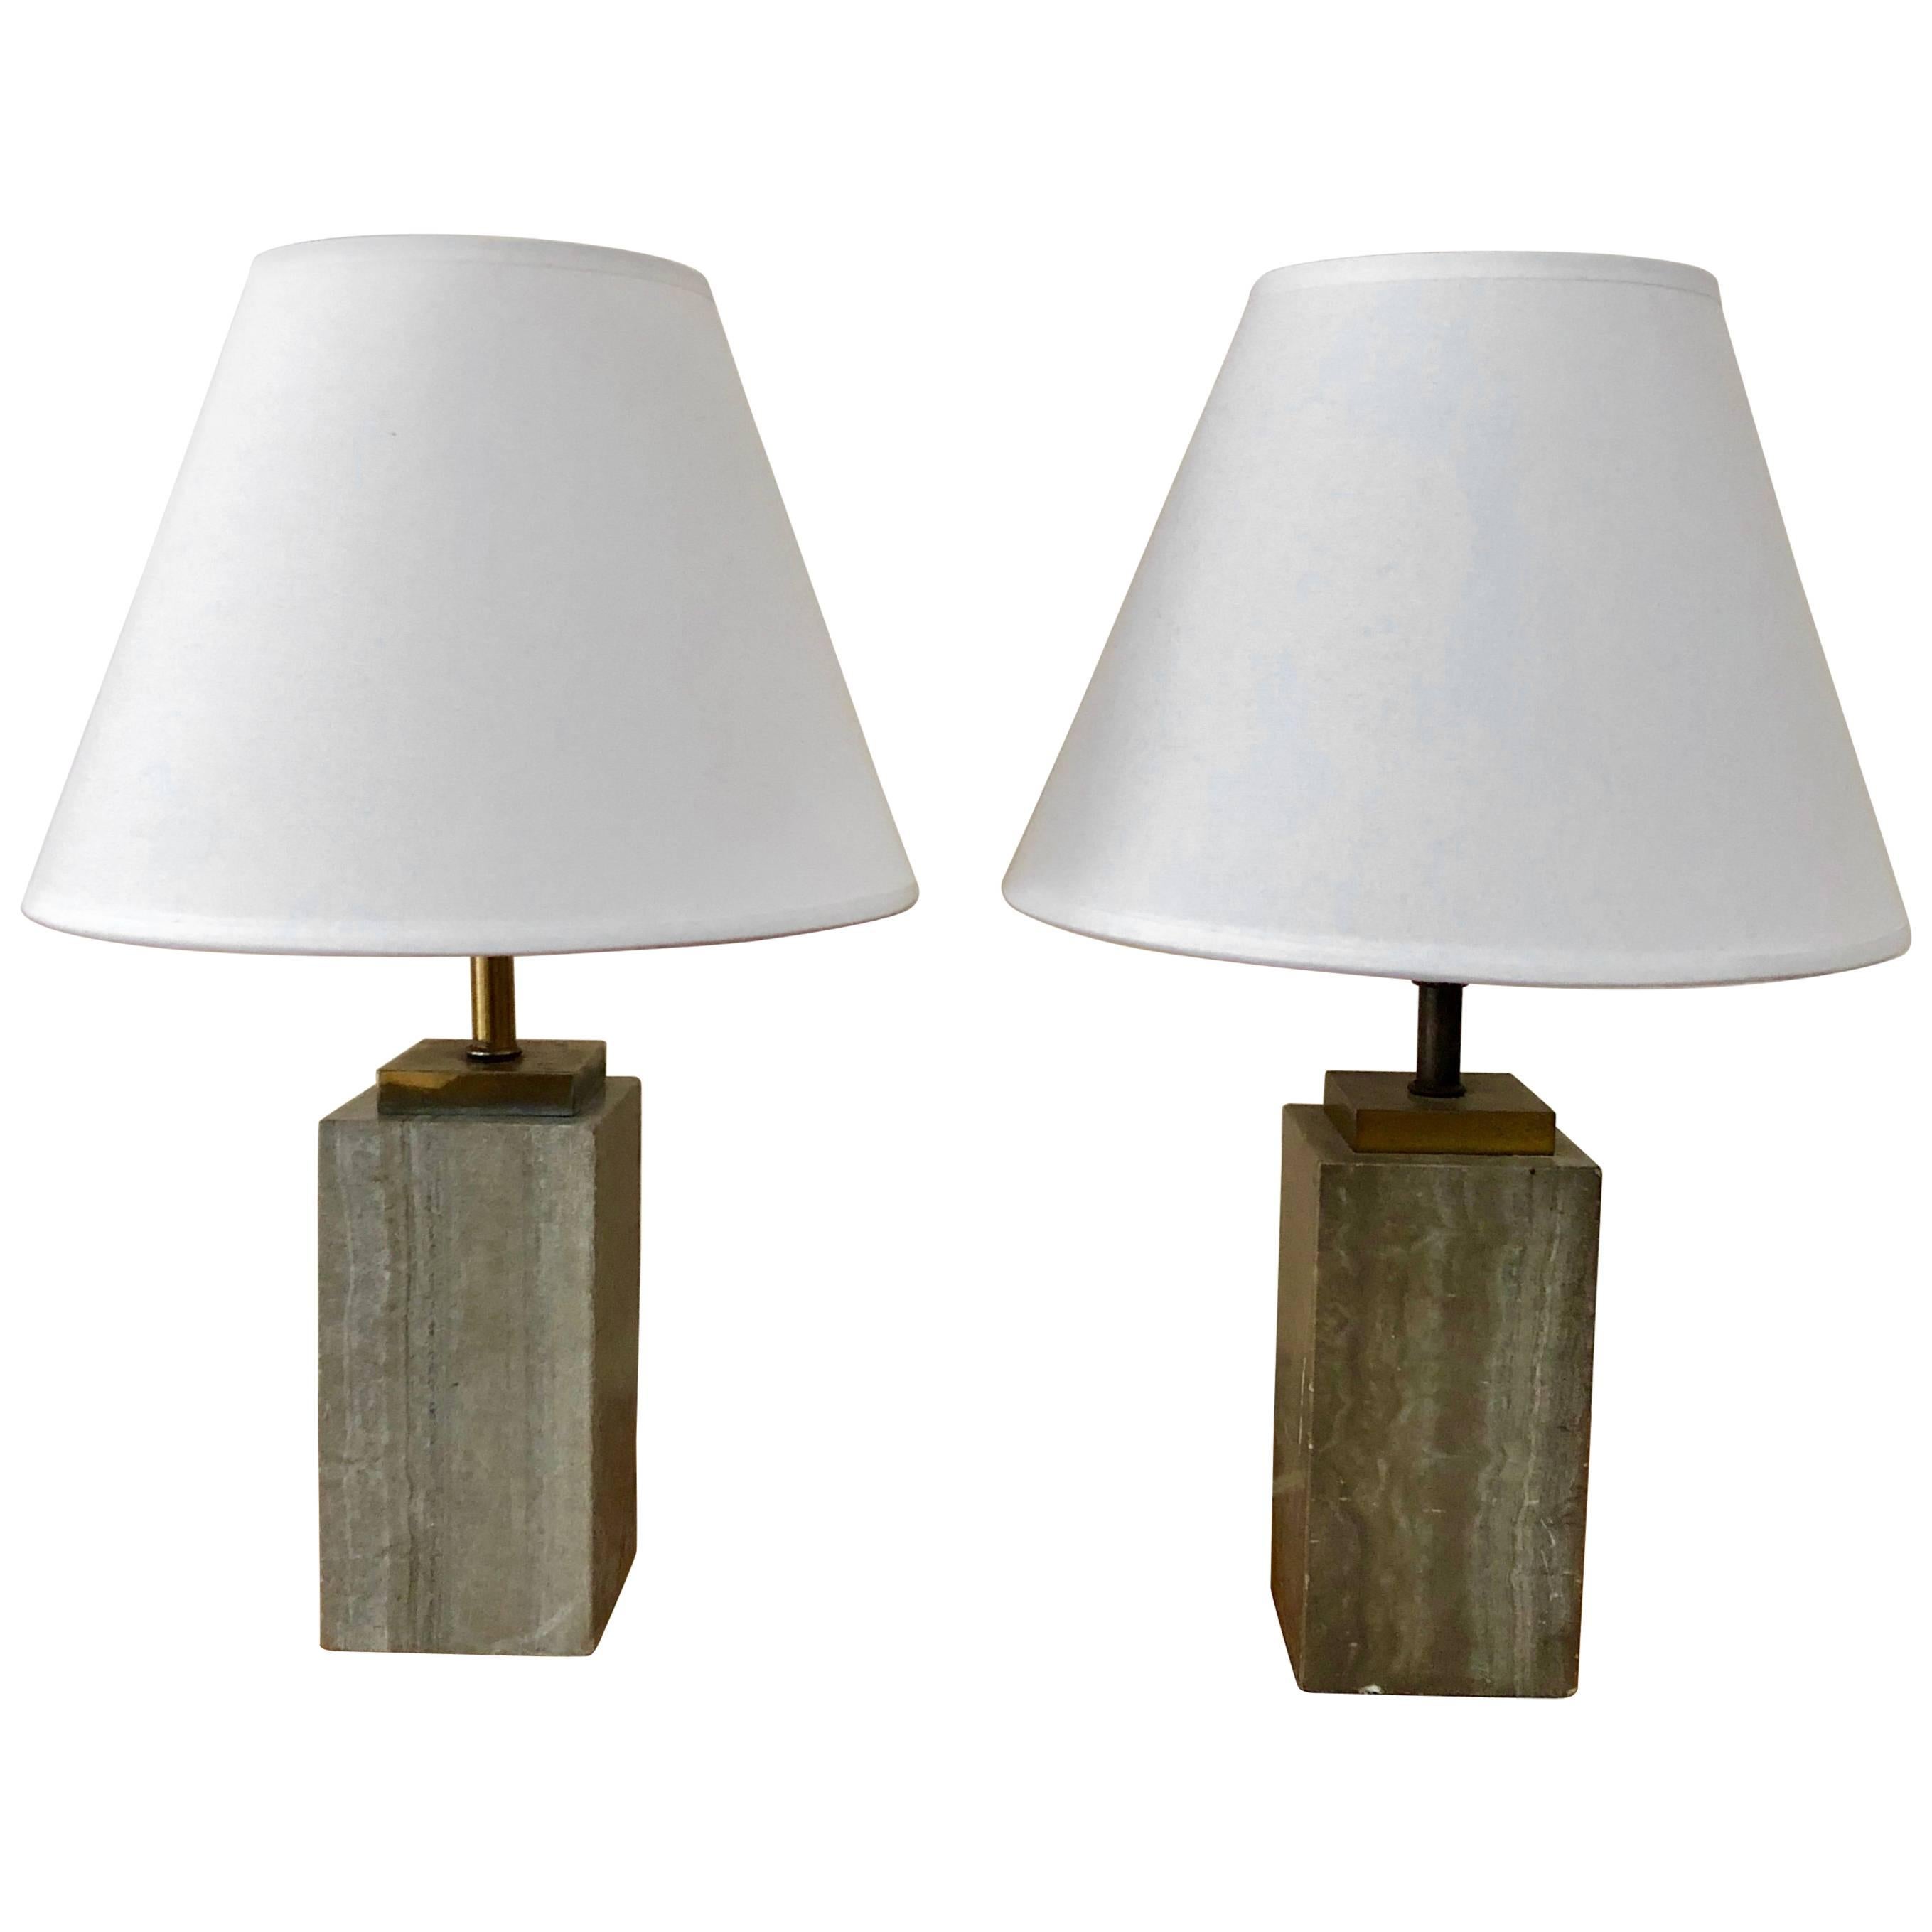 Pair of Robsjohn-Gibbings Beside Table Lamps